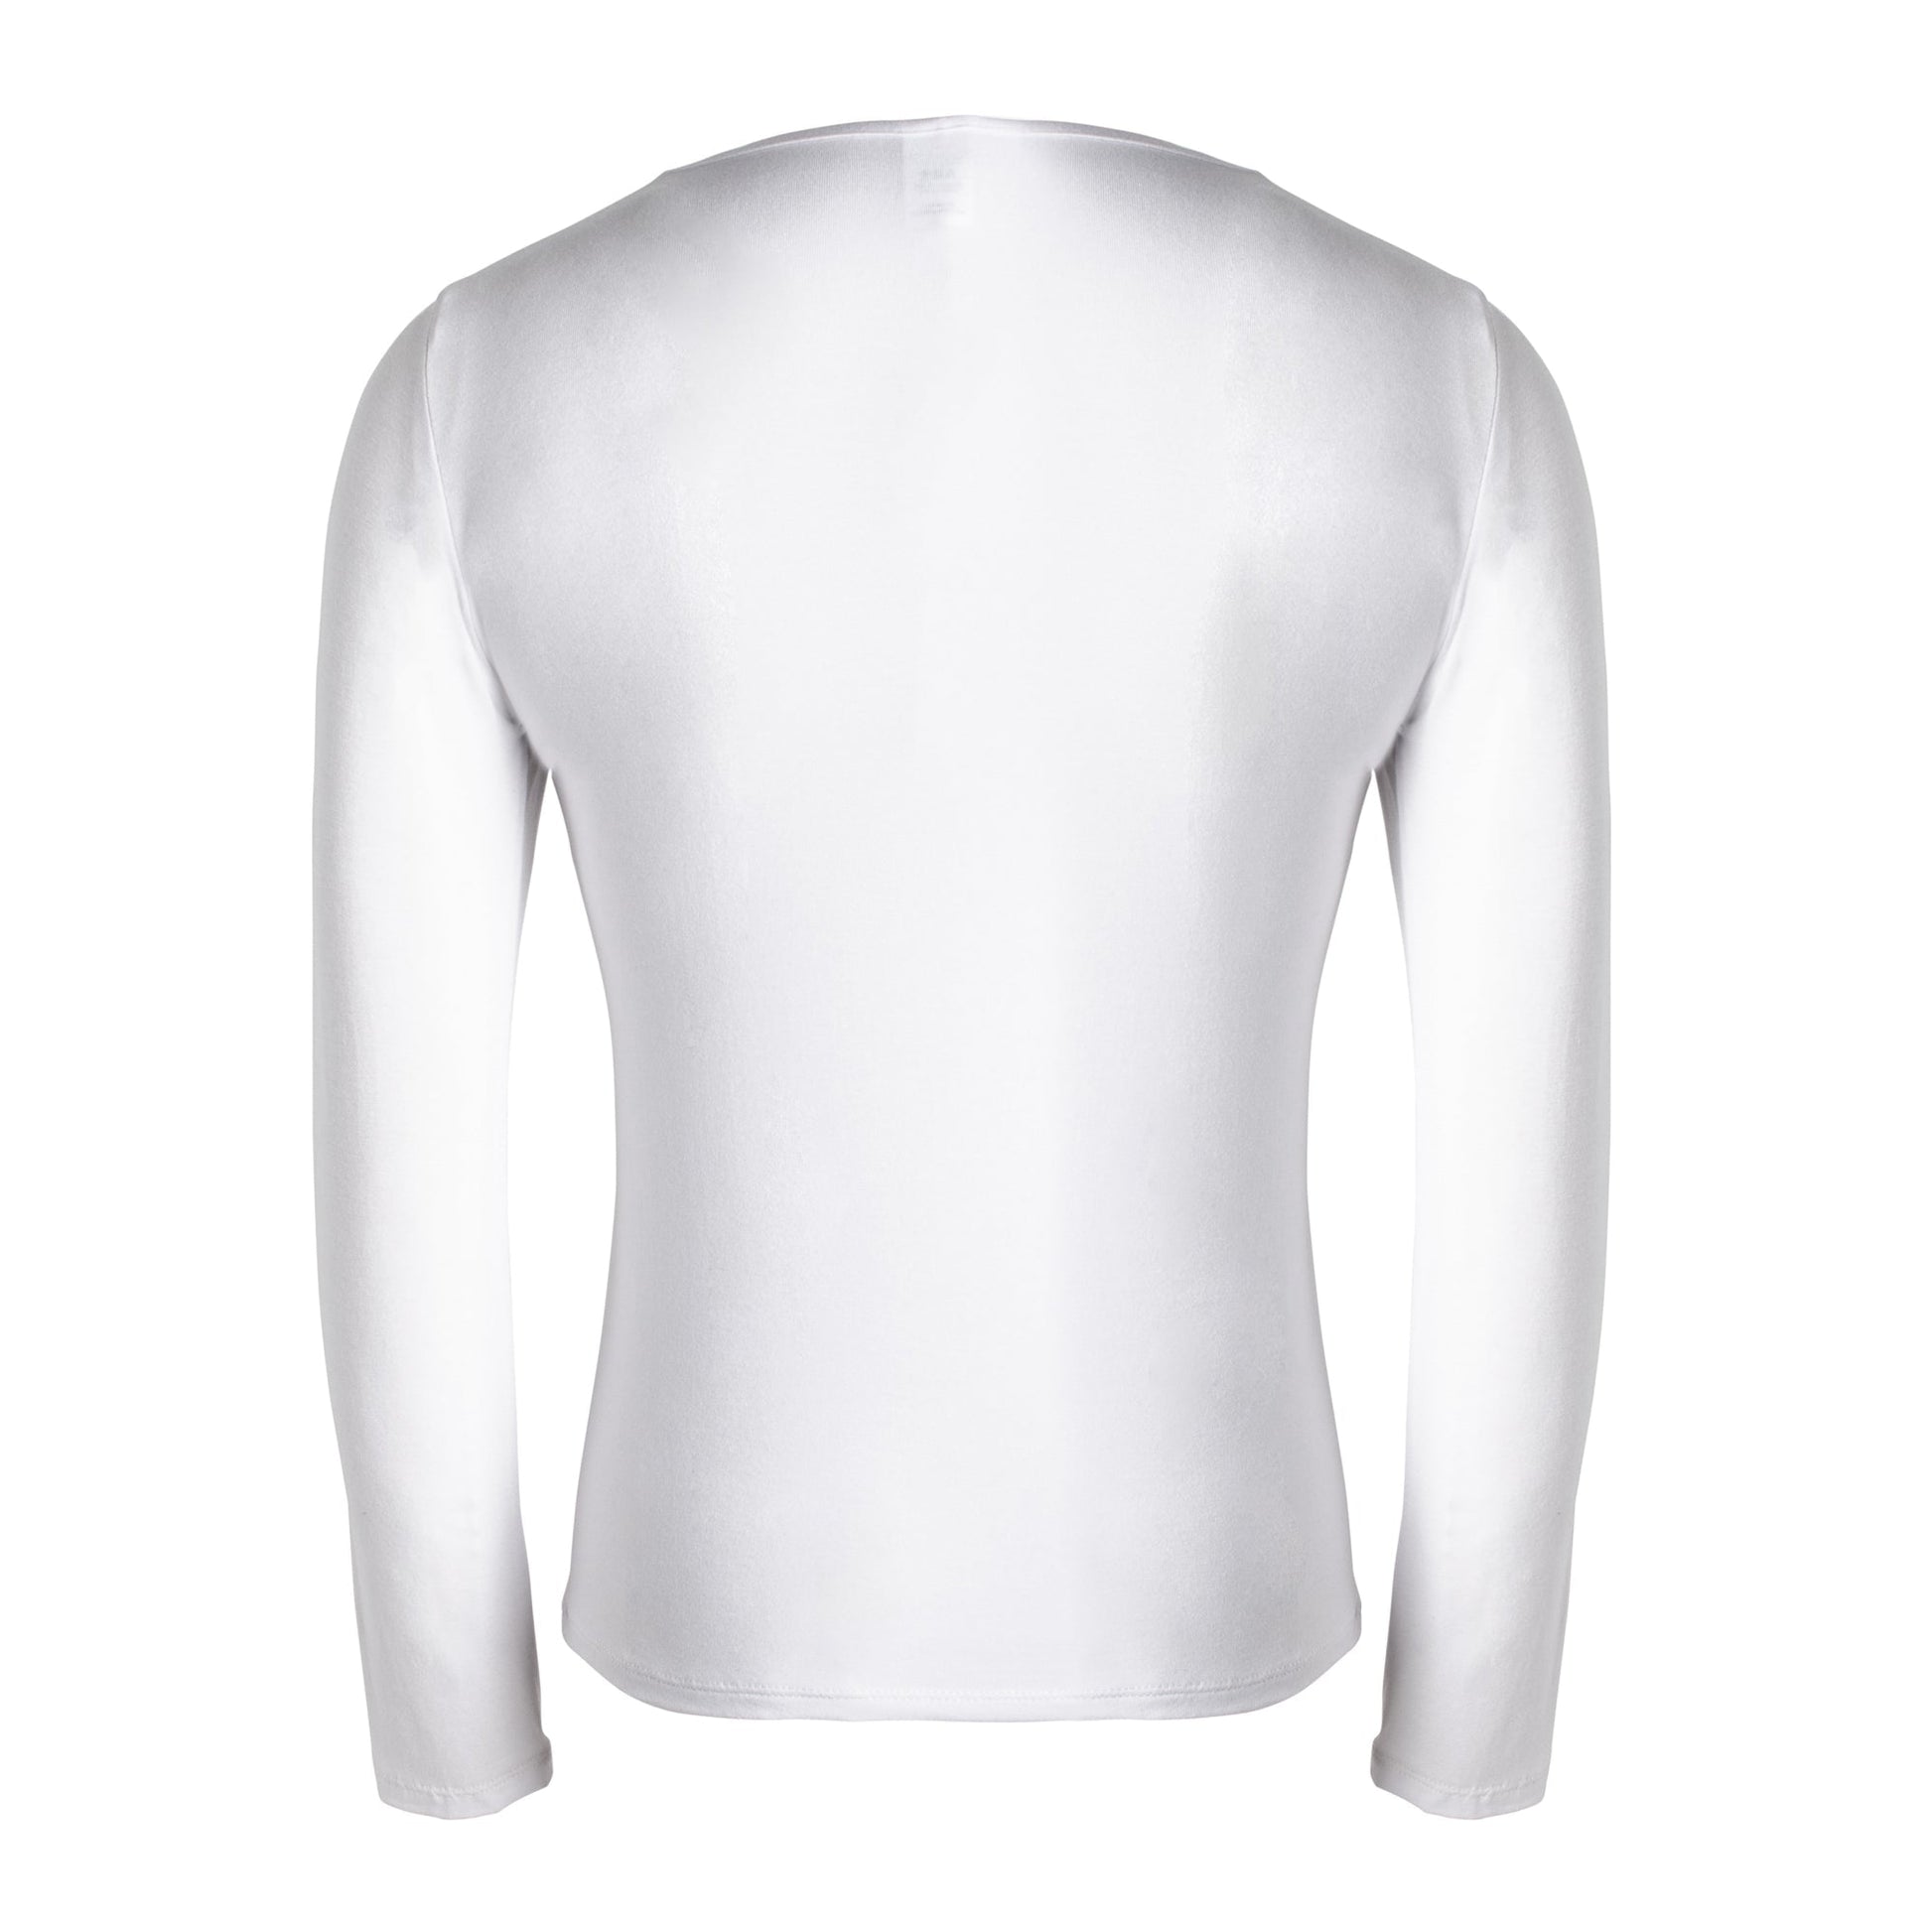 jolienisa White T Shirt